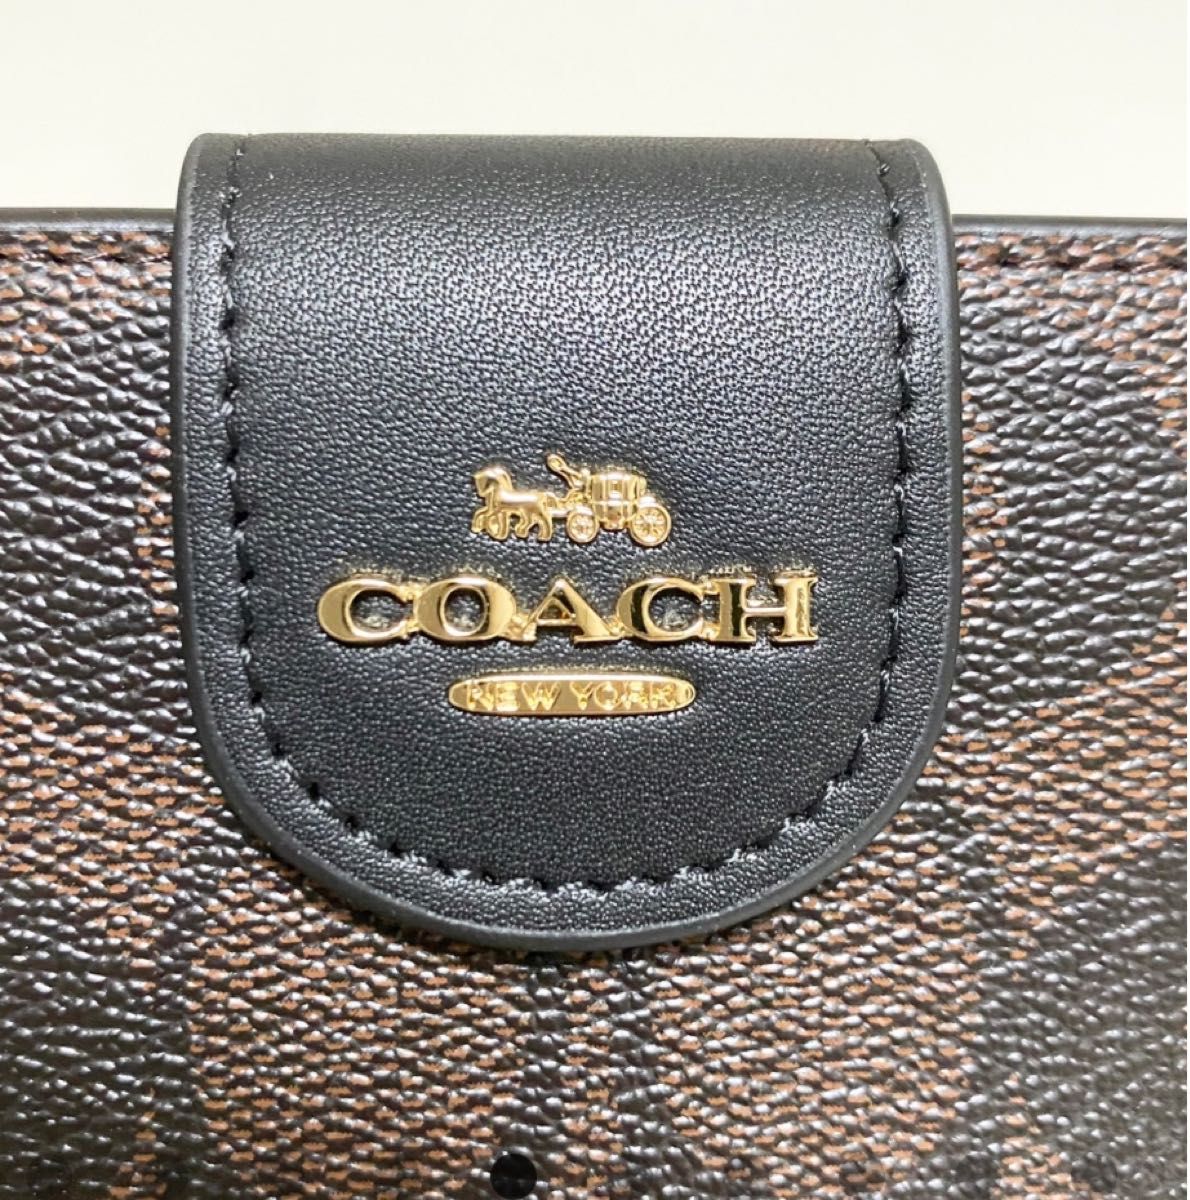 COACH 二つ折り財布 ミディアム コーナー ジップ C0082 ブラウン×ブラック